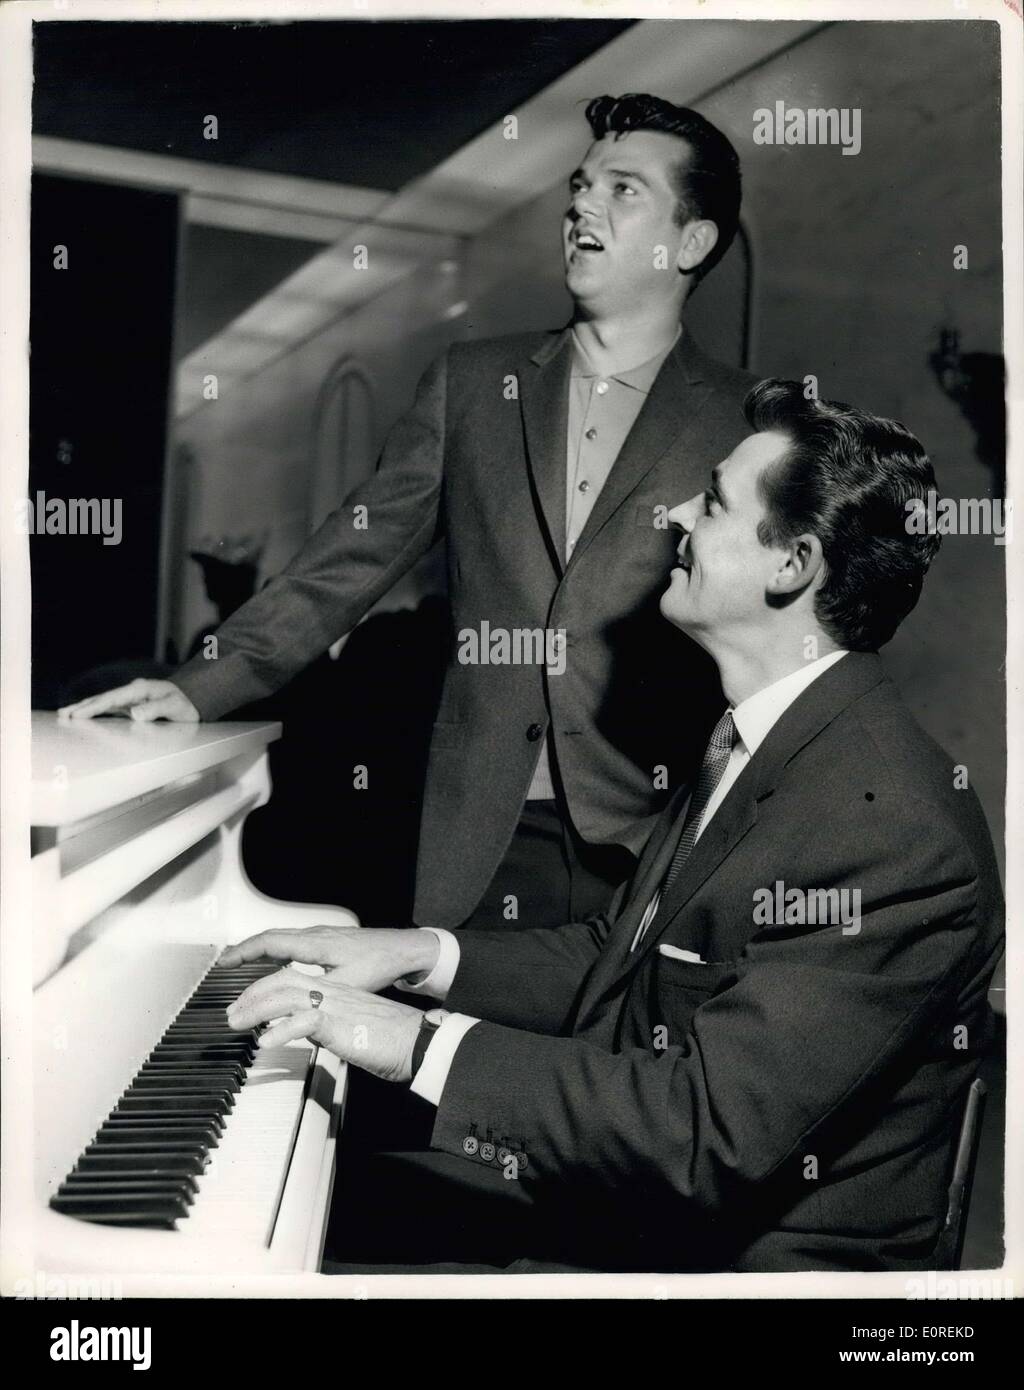 15 mai 1959 - Russ Conway - et délire d'obtenir ensemble : Russ Conway le pianiste britannique populaire - Conway Twitty et les chanteurs américains devaient être vus ensemble à l'Hôtel Savoy ce matin. Russ Conway est apparaissant sur la B.B.C. Billy Cotton TV show - tout en délire est apparaissant sur la chaîne rivale dans ''OH-Boy'' - mais les deux stars record pour la même société E.M.I. qui comprend la Colombie et H.M.V records. Photo montre Russ Conway Conway Twitty accompagne au piano - quand ils se sont rencontrés à l'Hôtel Savoy ce matin. Banque D'Images